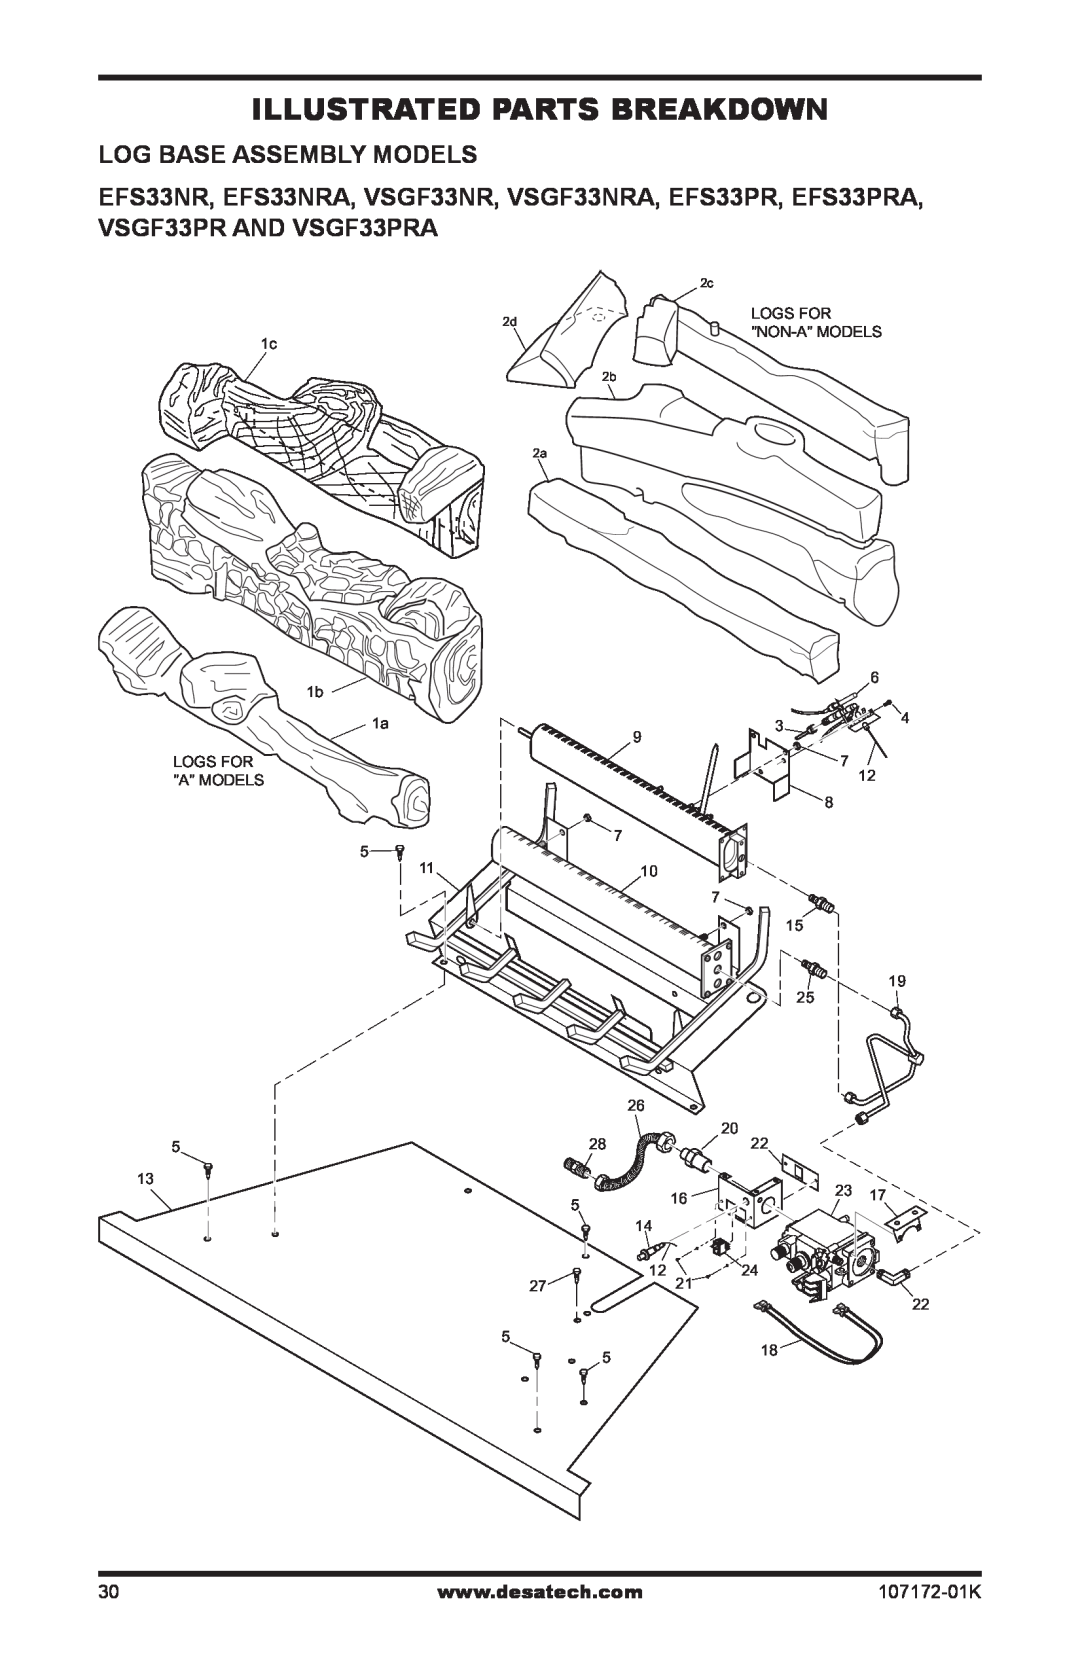 Desa EFS33NRA, VSGF33NRA installation manual Illustrated Parts Breakdown, Log Base Assembly Models, 107172-01K 